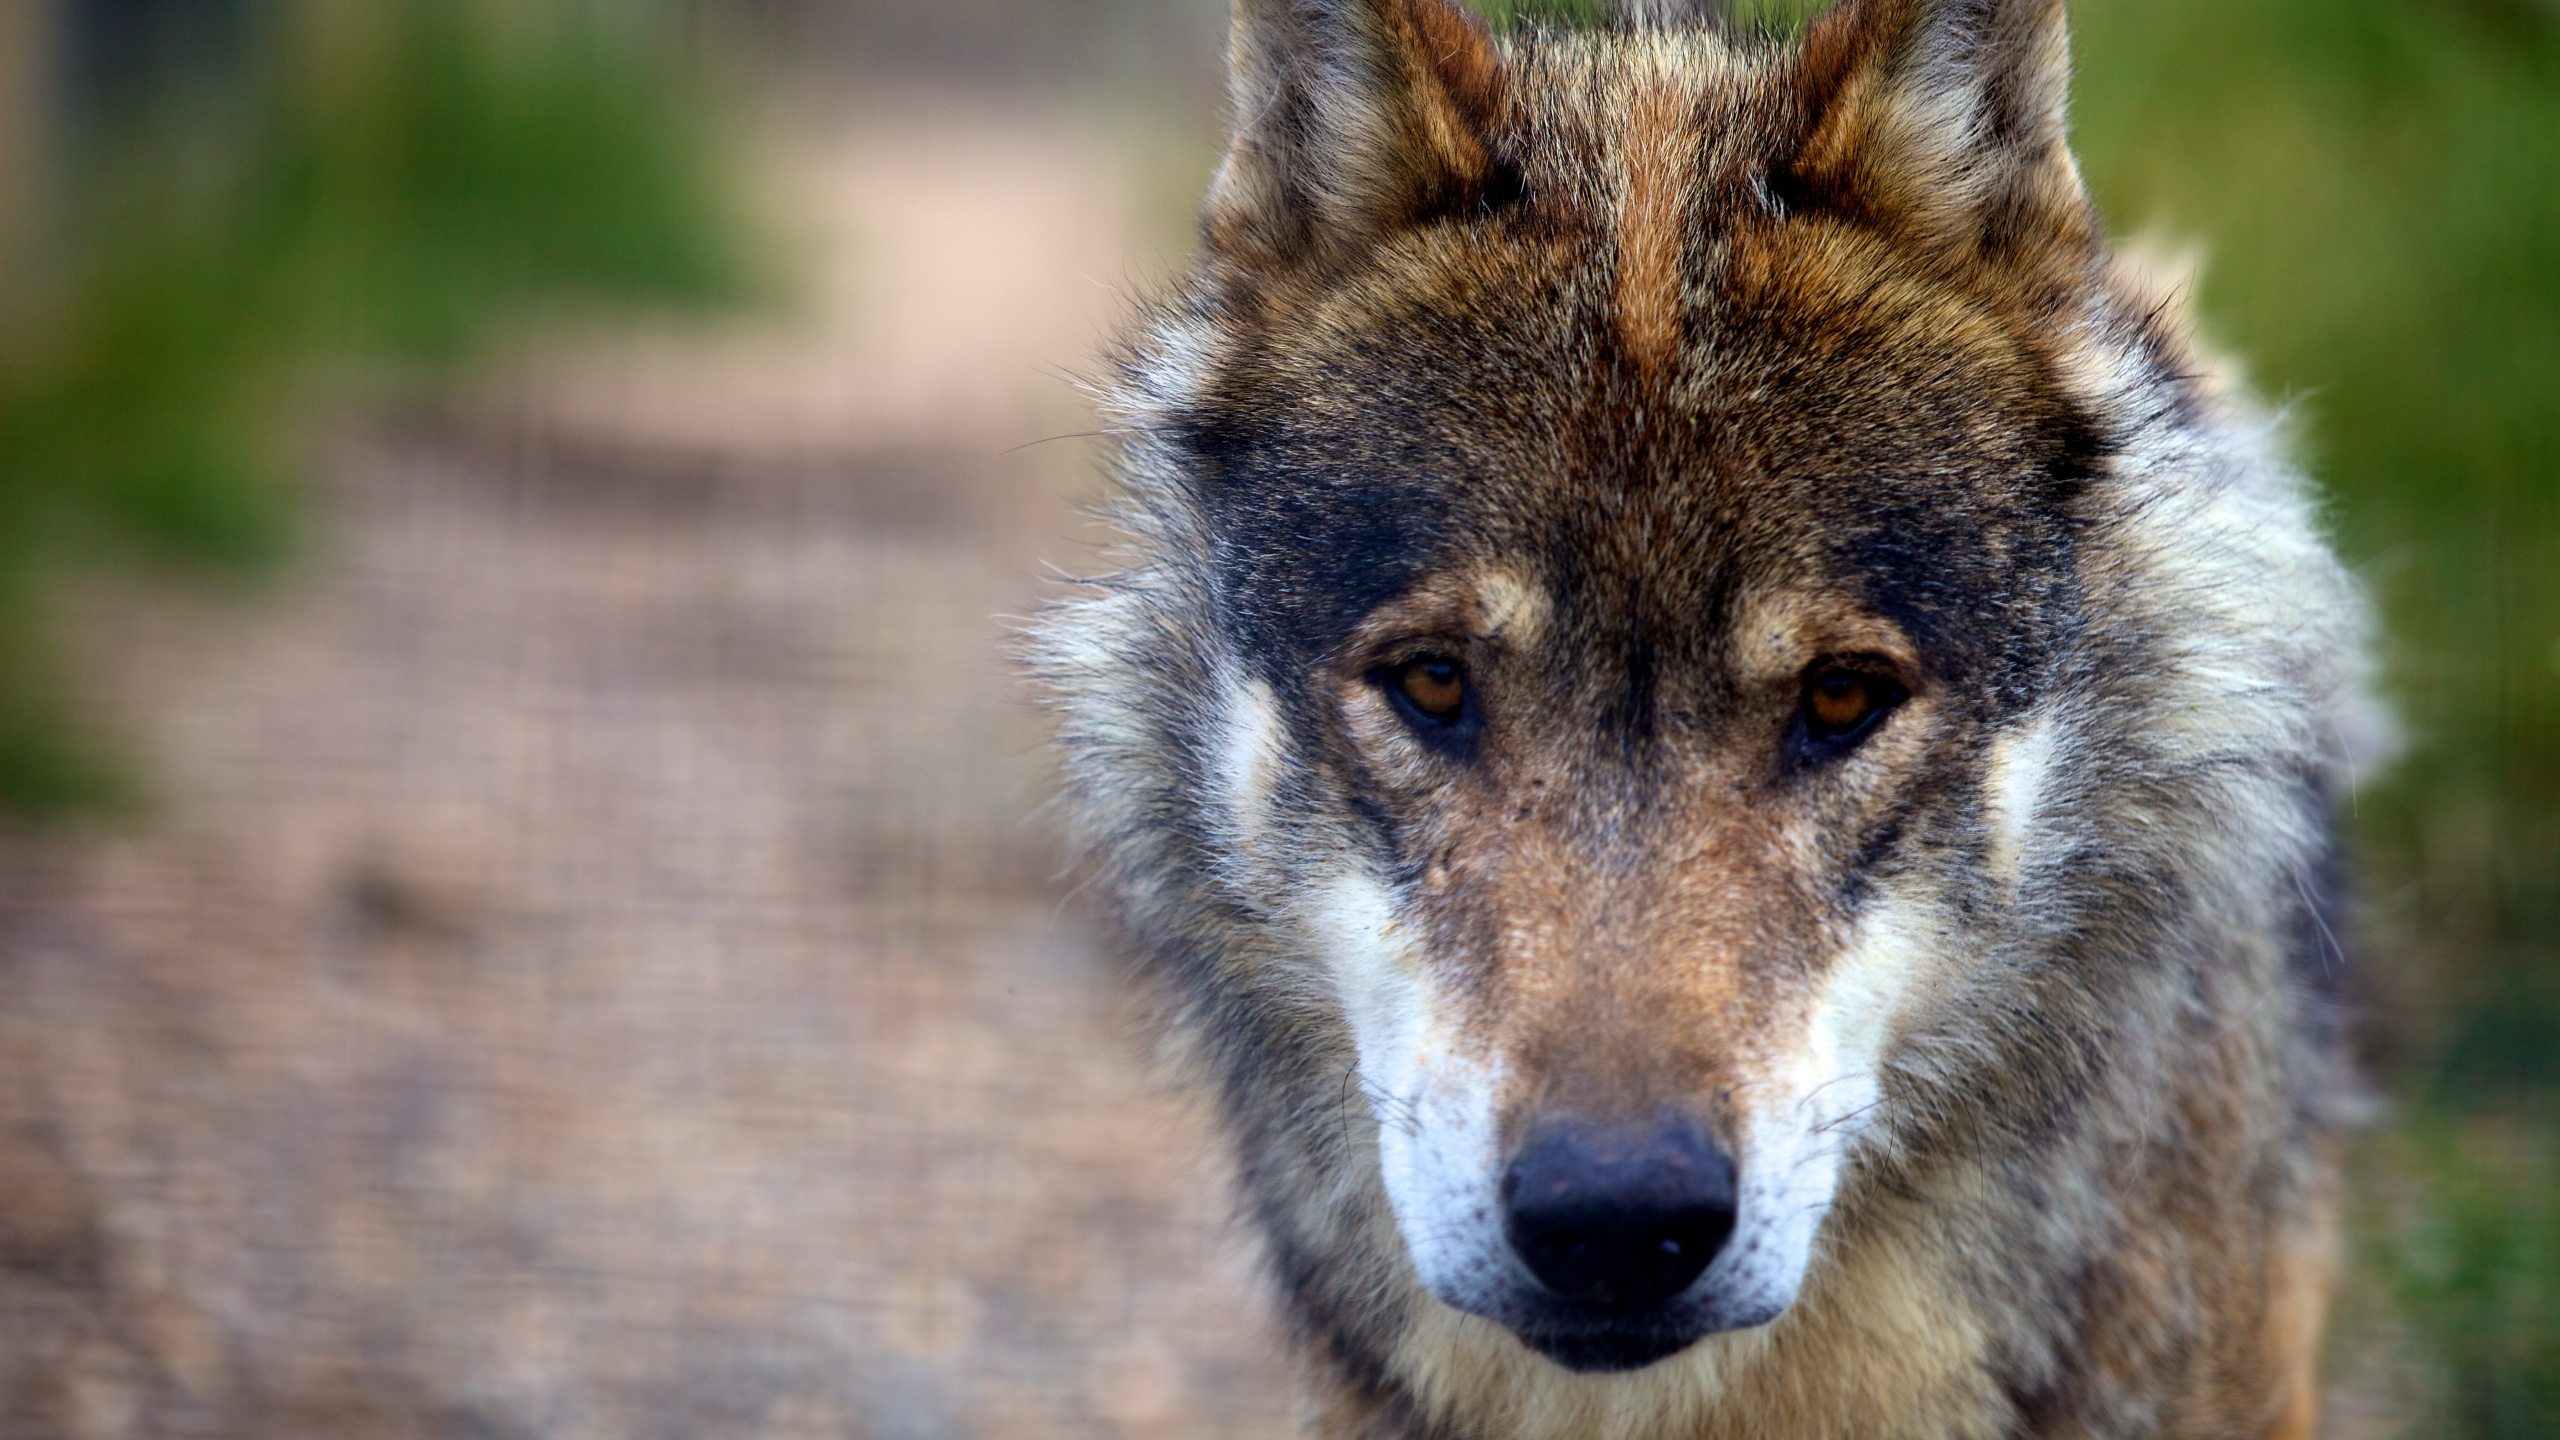 狼, 野生动物, 捷克斯洛伐克那只狼狗, 那只狼狗, 狗喜欢哺乳动物 壁纸 2560x1440 允许